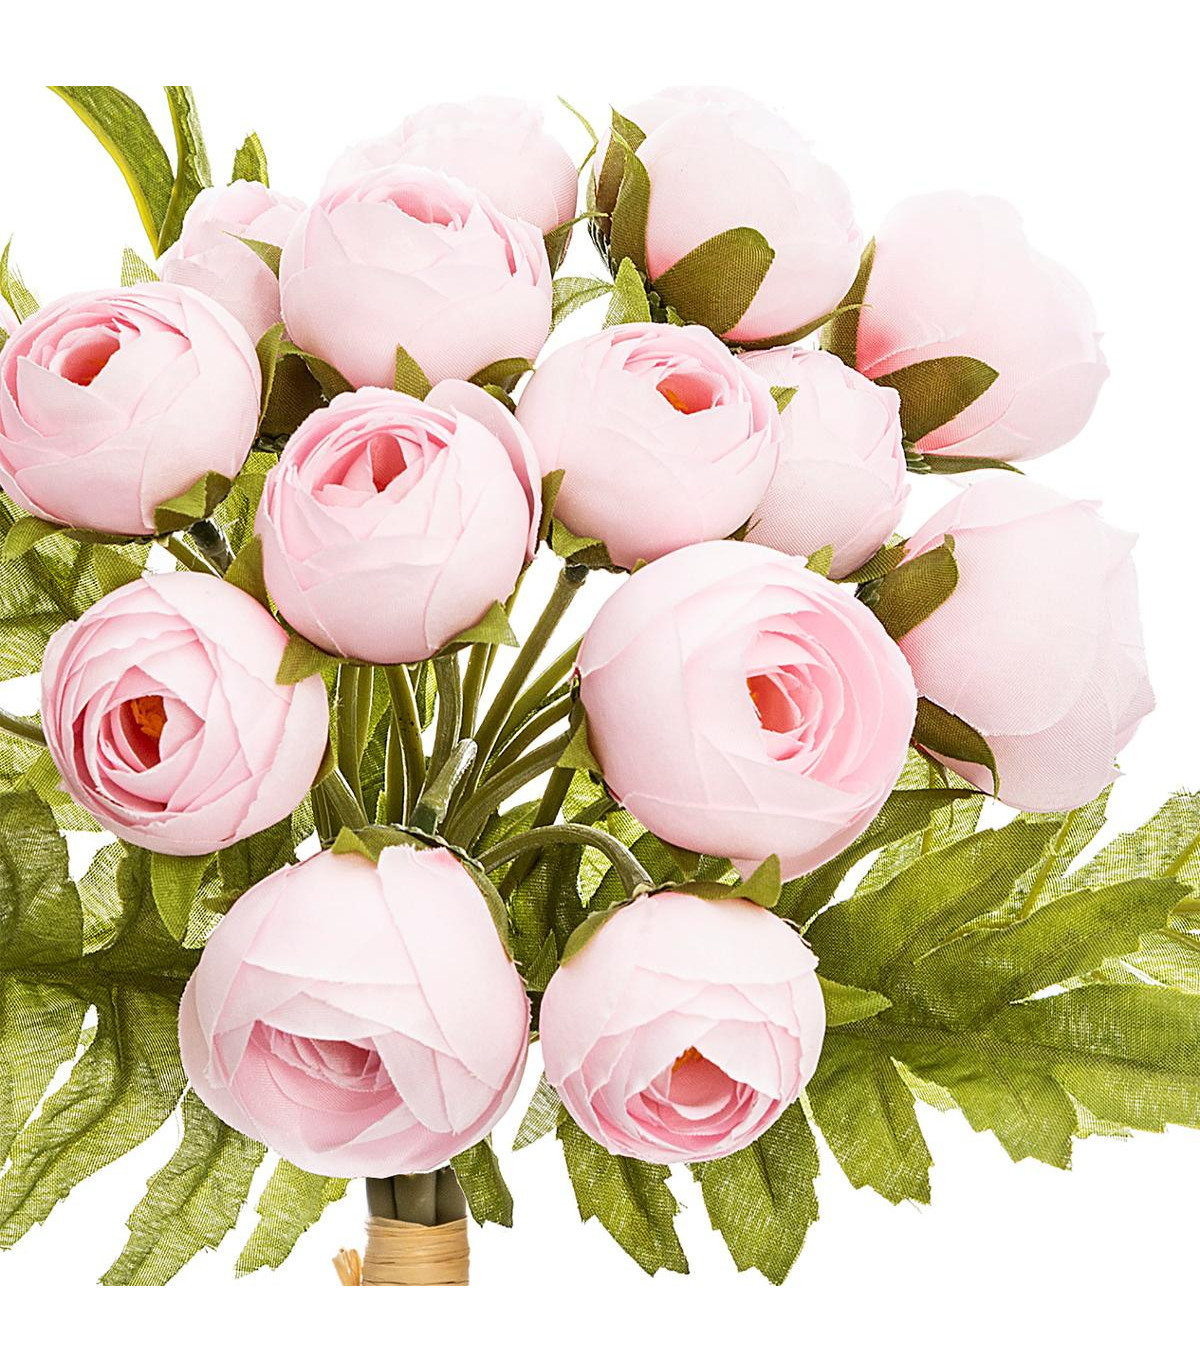 bouquet-de-fleurs-artificielles-18-mini-camelias-rose-h-30-cm (1)